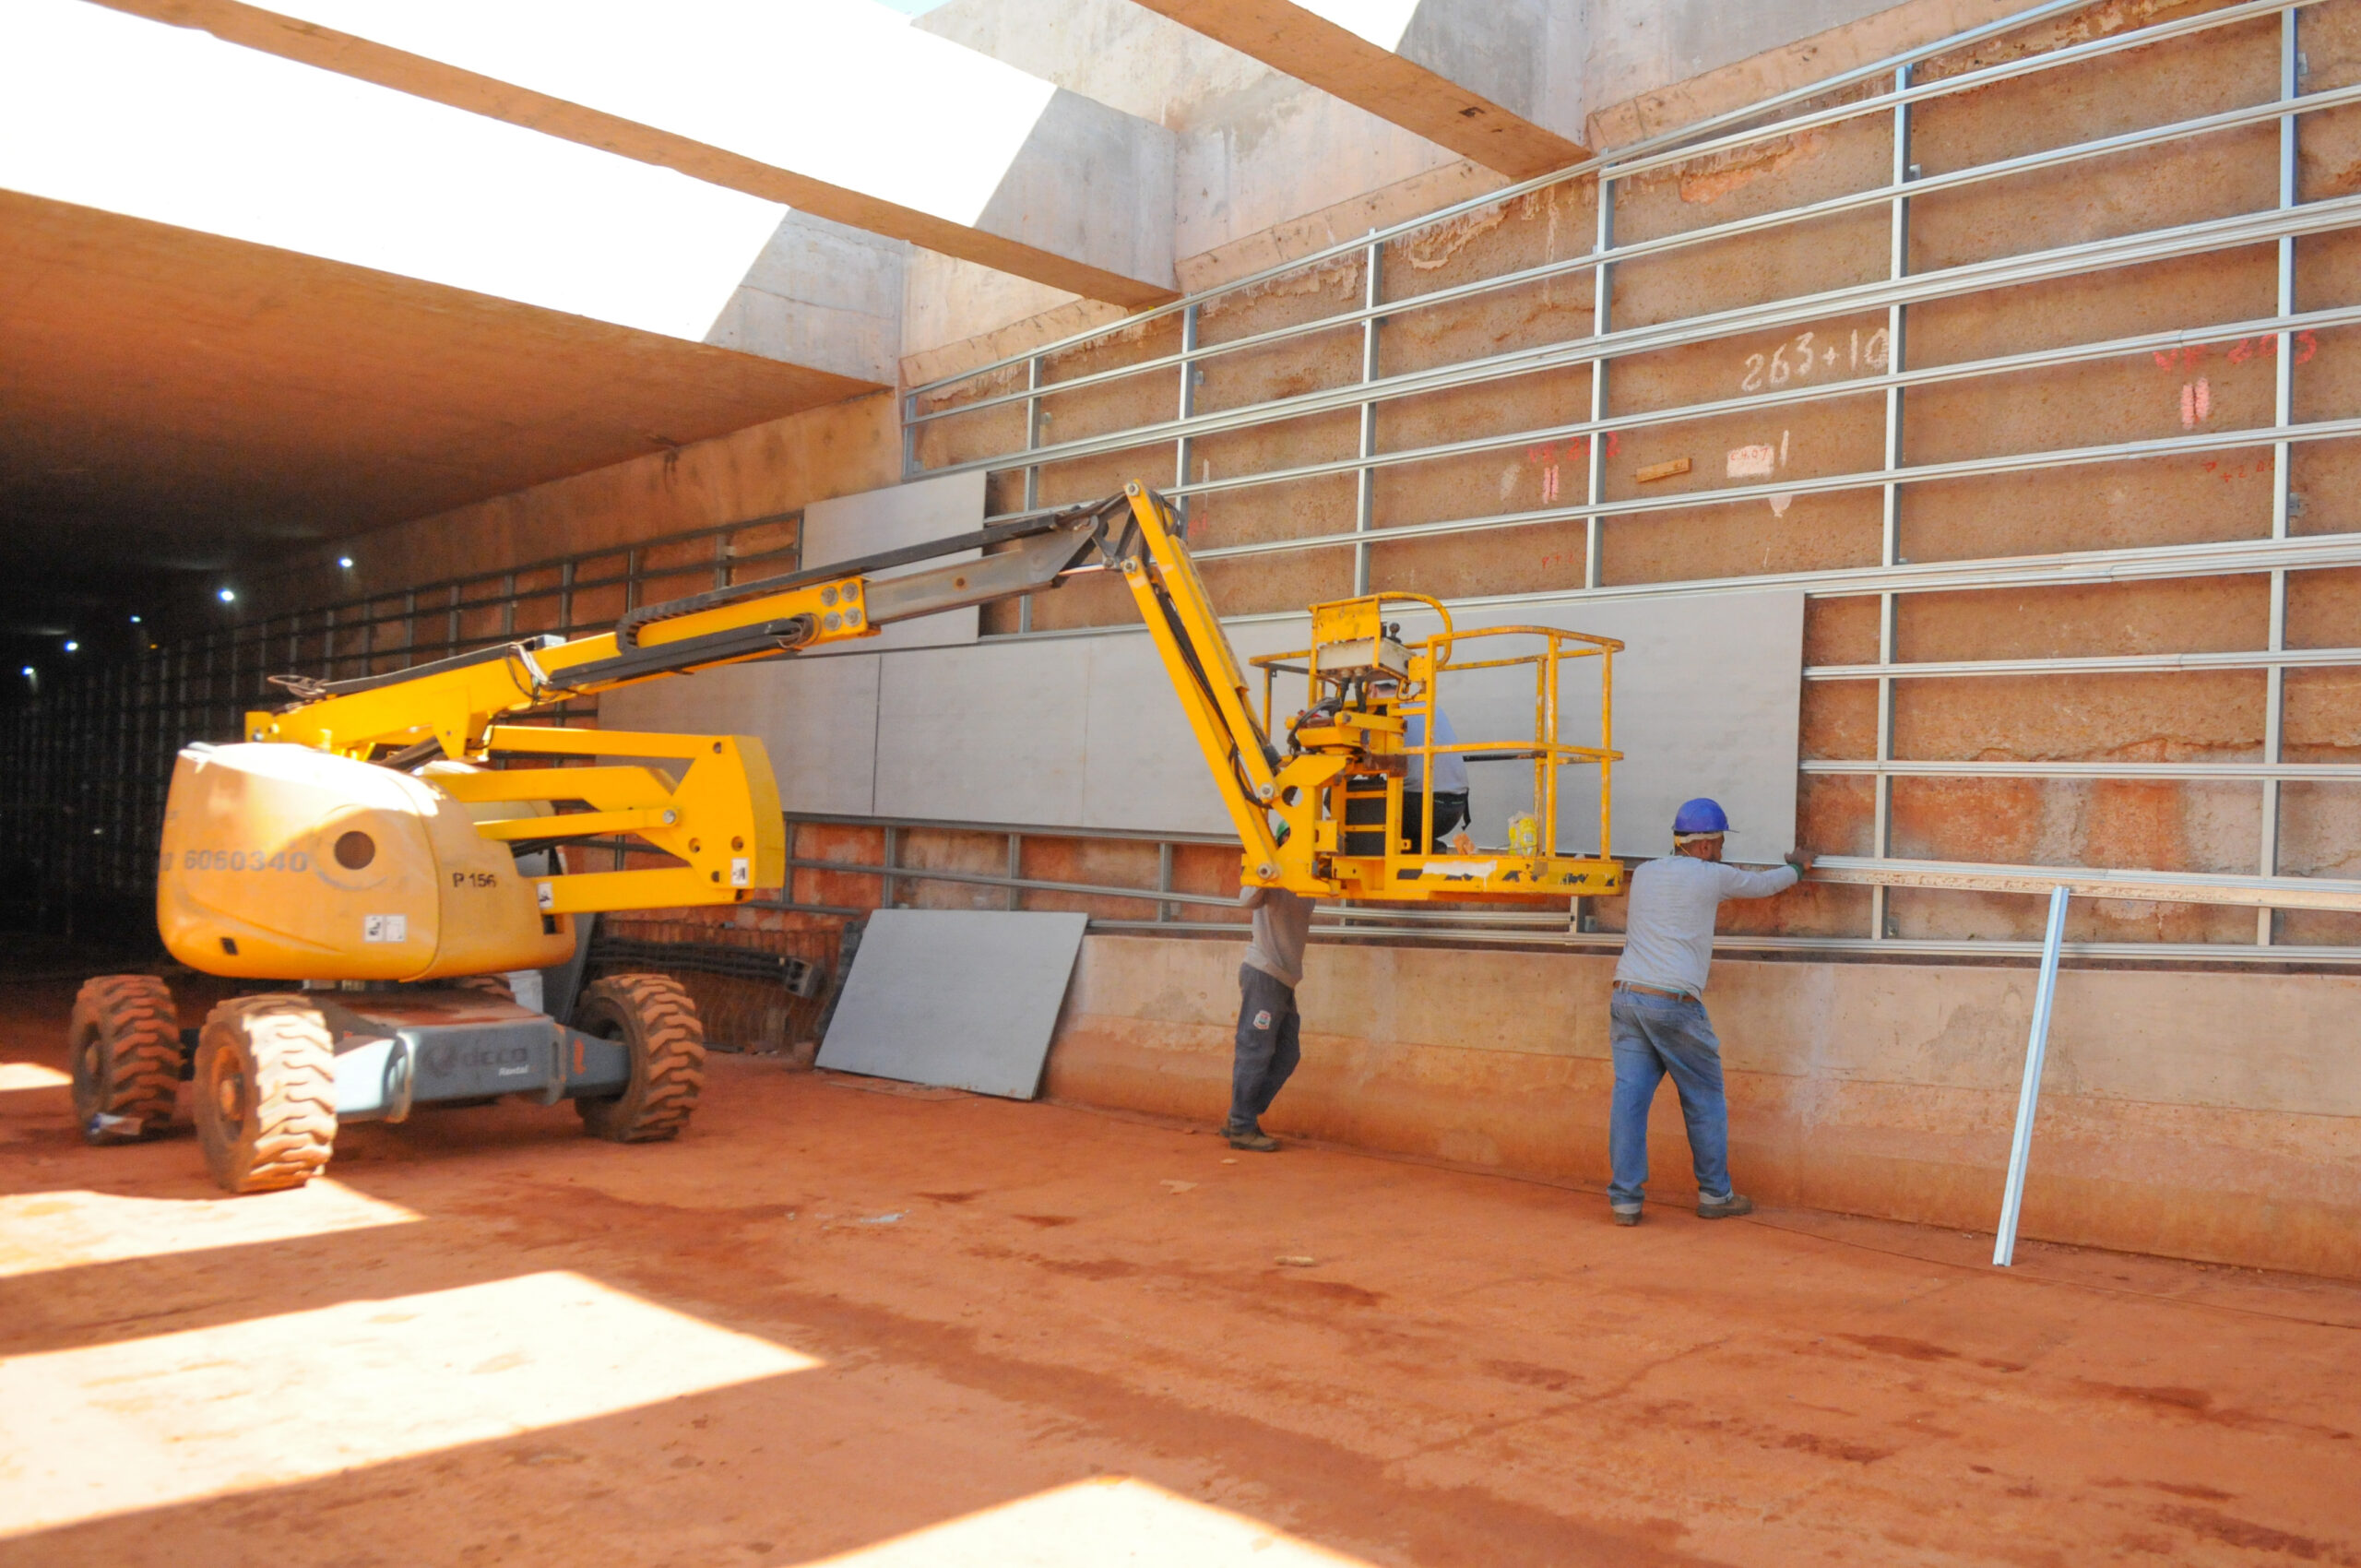 Estruturas são fixadas com parafusos em perfis metálicos, previamente instalados nas paredes | Foto: Paulo H. Carvalho/Agência Brasília